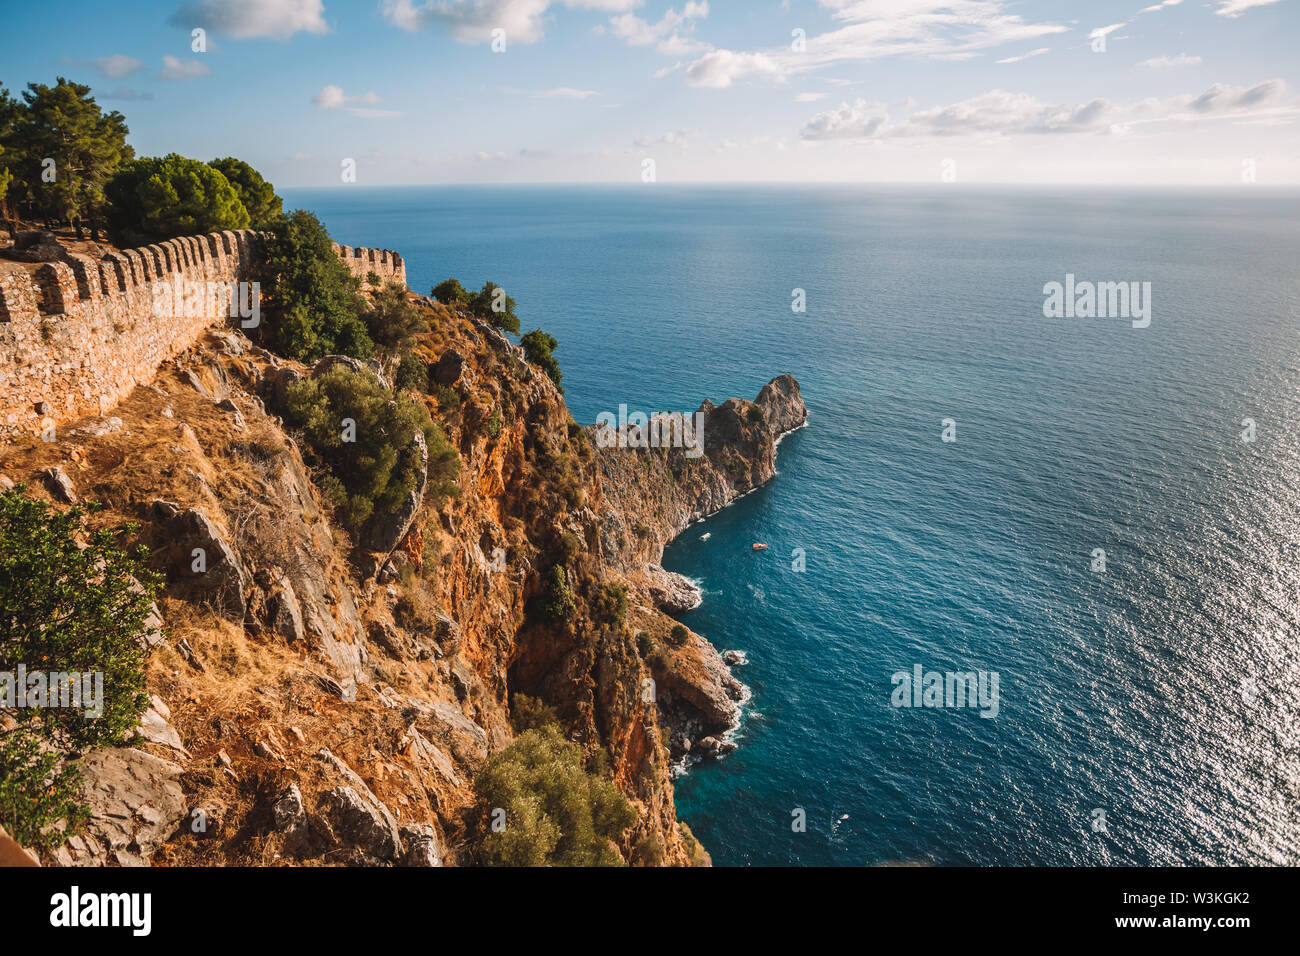 La côte d'Alanya avec de vieux murs du château au-dessus de la mer bleue, de la Turquie, Antalya district Banque D'Images